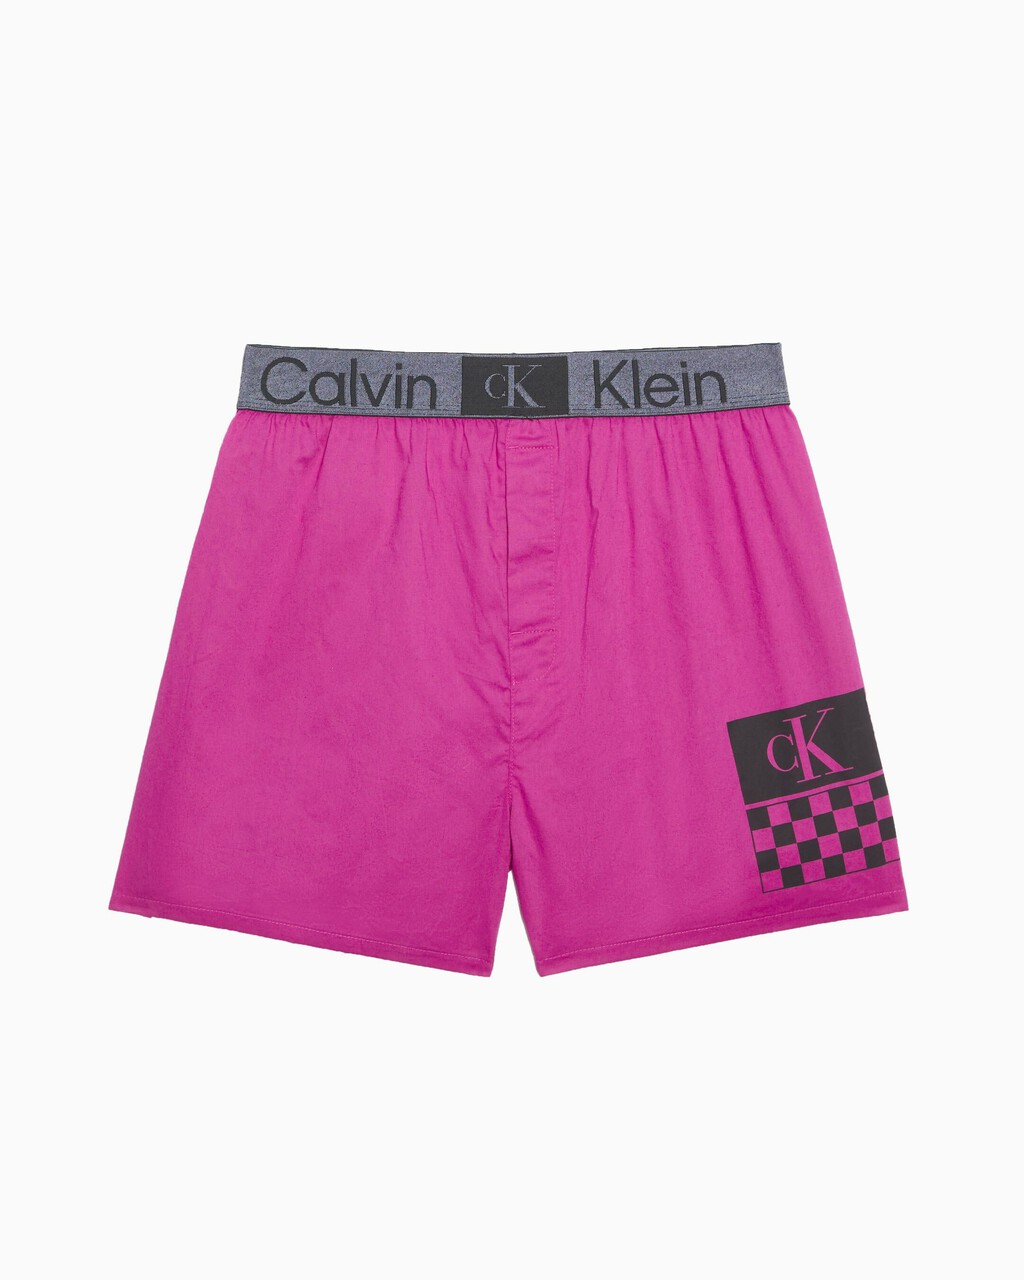 CALVIN KLEIN 1996 經典四角褲, Palace Pink, hi-res